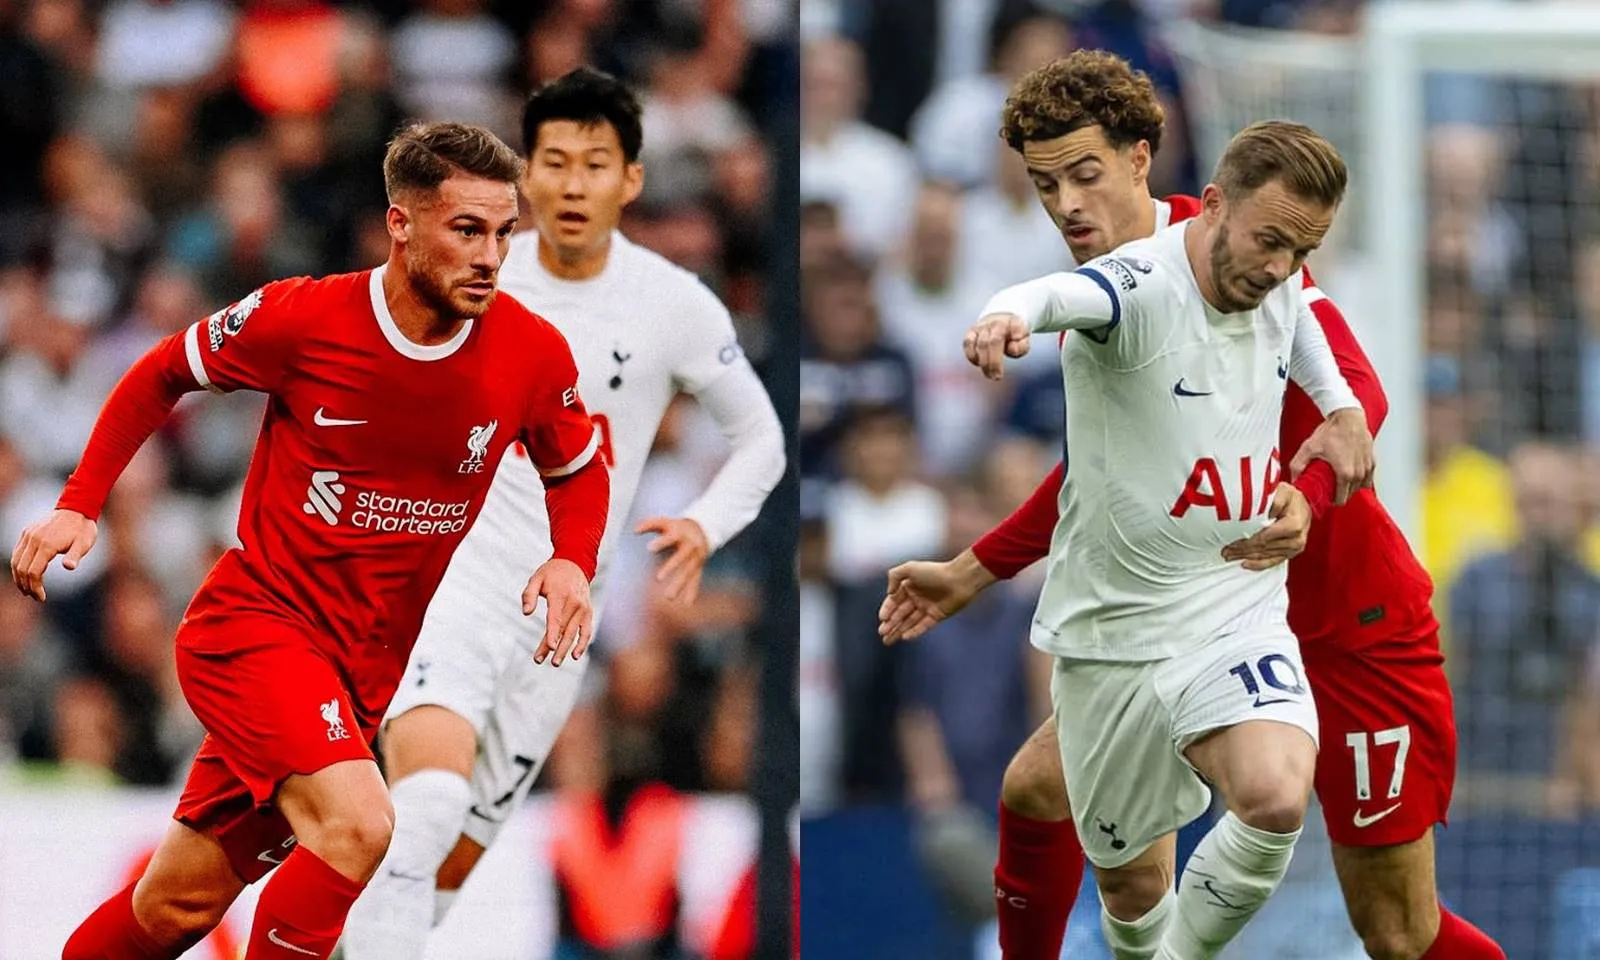 Lịch thi đấu Liverpool vs Tottenham tuần này (22h30 ngày 5/5), xem trực tiếp ở đâu - kênh nào?